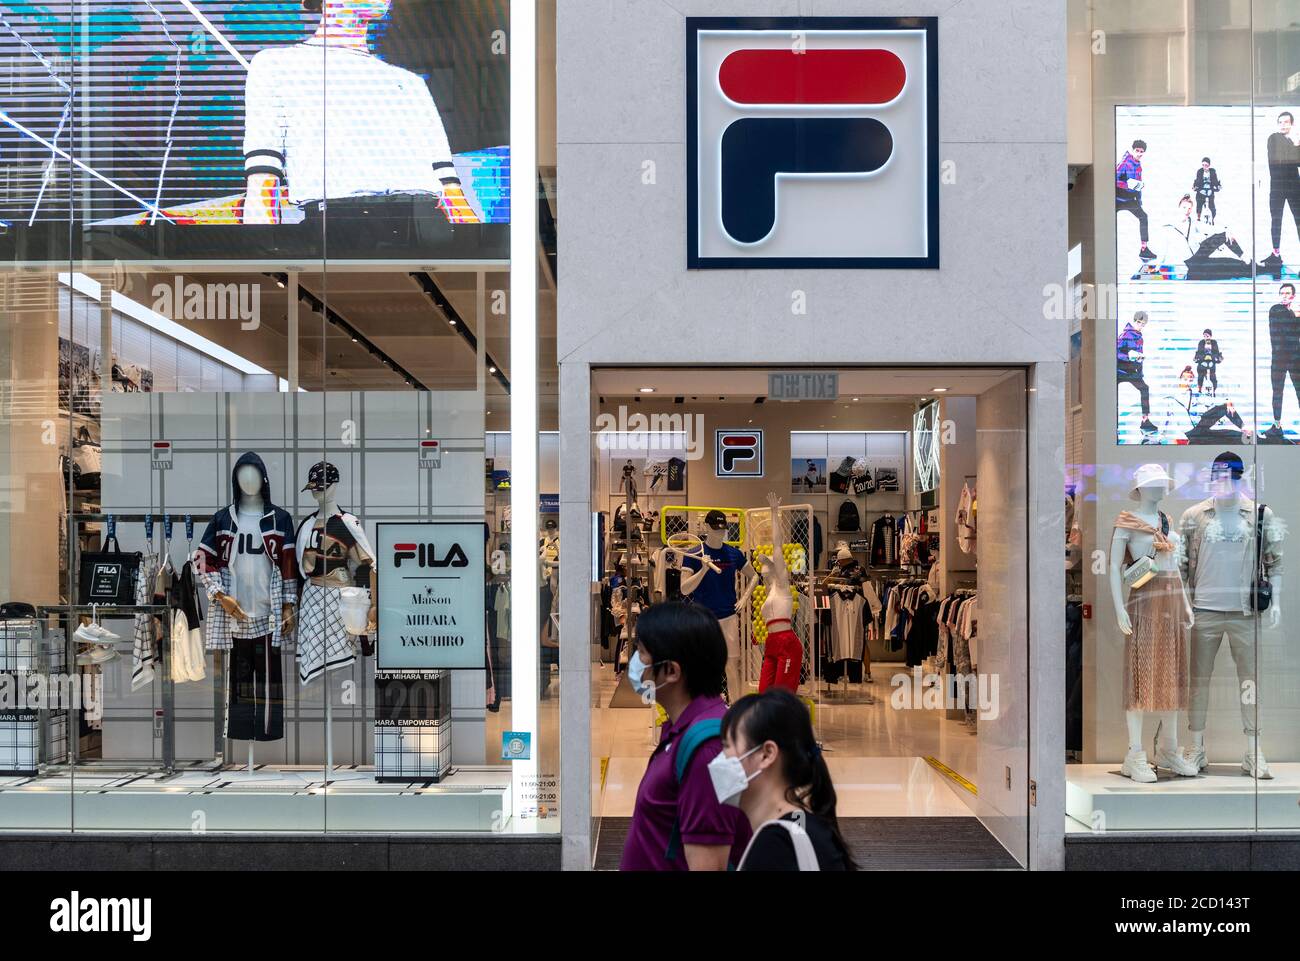 Marque de sport italien Fila store vu à Hong Kong Photo Stock - Alamy